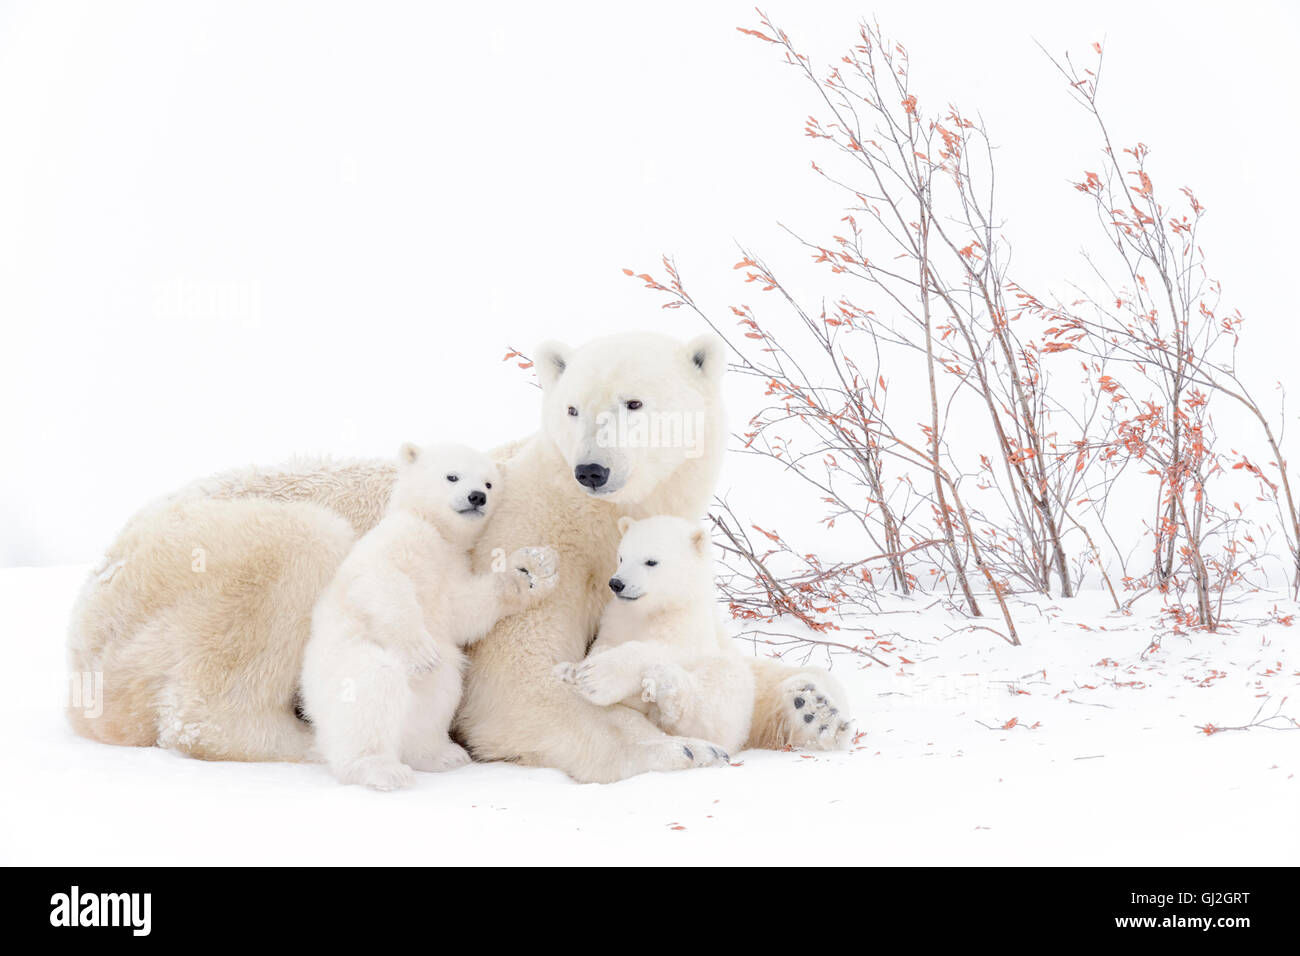 El oso polar (Ursus maritimus) madre acostado con dos cachorros jugando, Parque Nacional Wapusk, Manitoba, Canadá Foto de stock